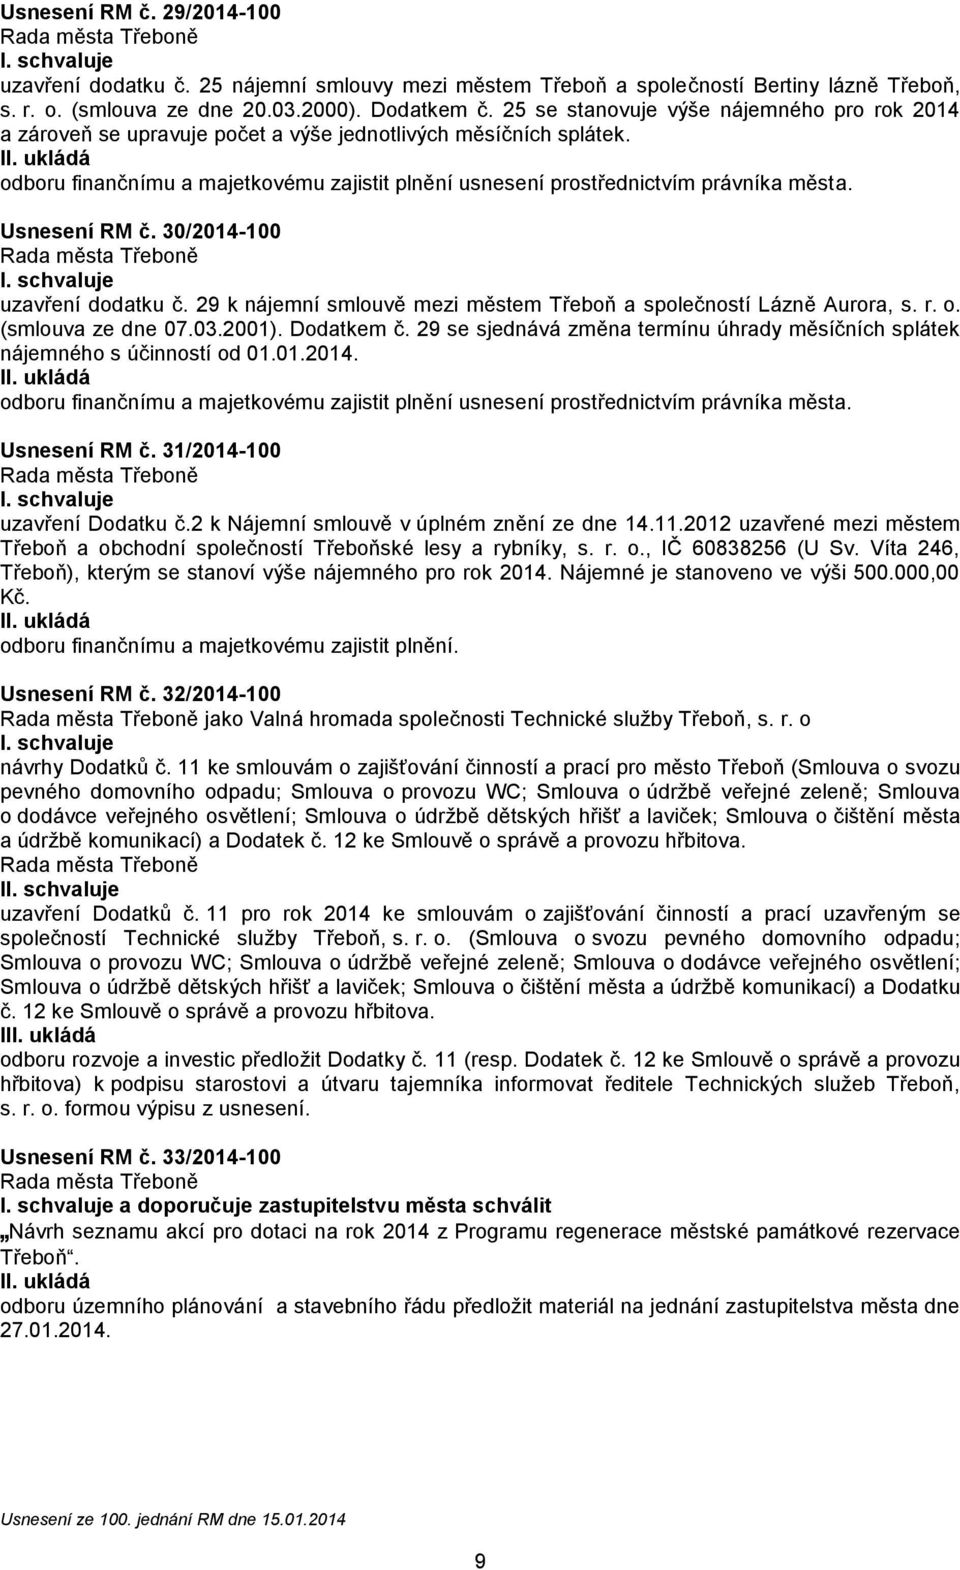 Usnesení RM č. 30/2014-100 uzavření dodatku č. 29 k nájemní smlouvě mezi městem Třeboň a společností Lázně Aurora, s. r. o. (smlouva ze dne 07.03.2001). Dodatkem č.